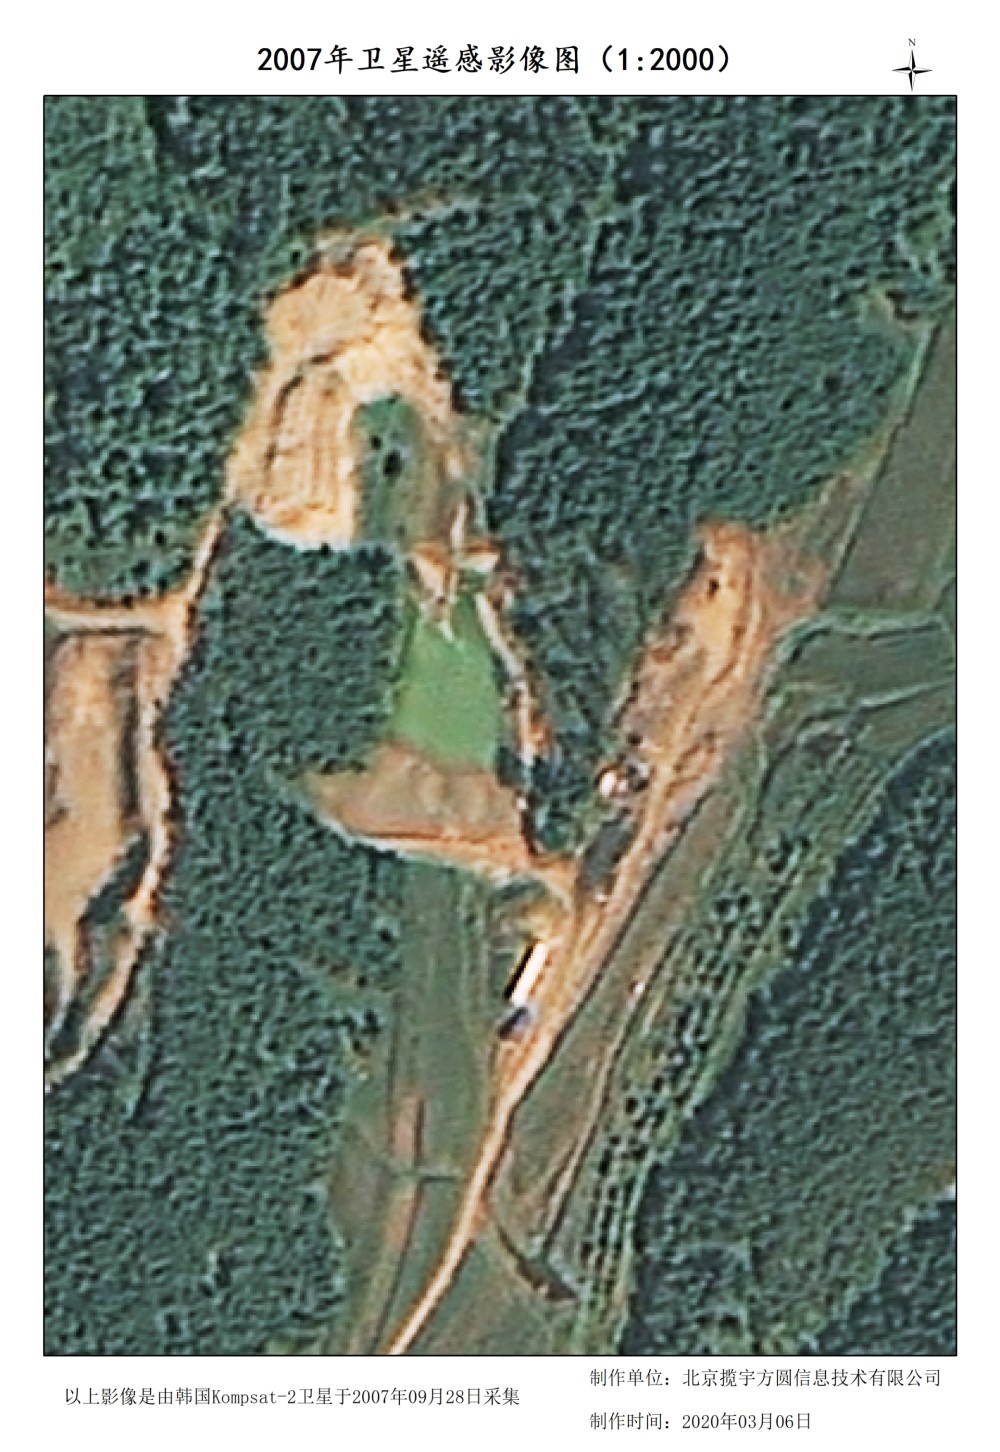 韩国Kompsat-2-1米分辨率卫星影像数据样例图